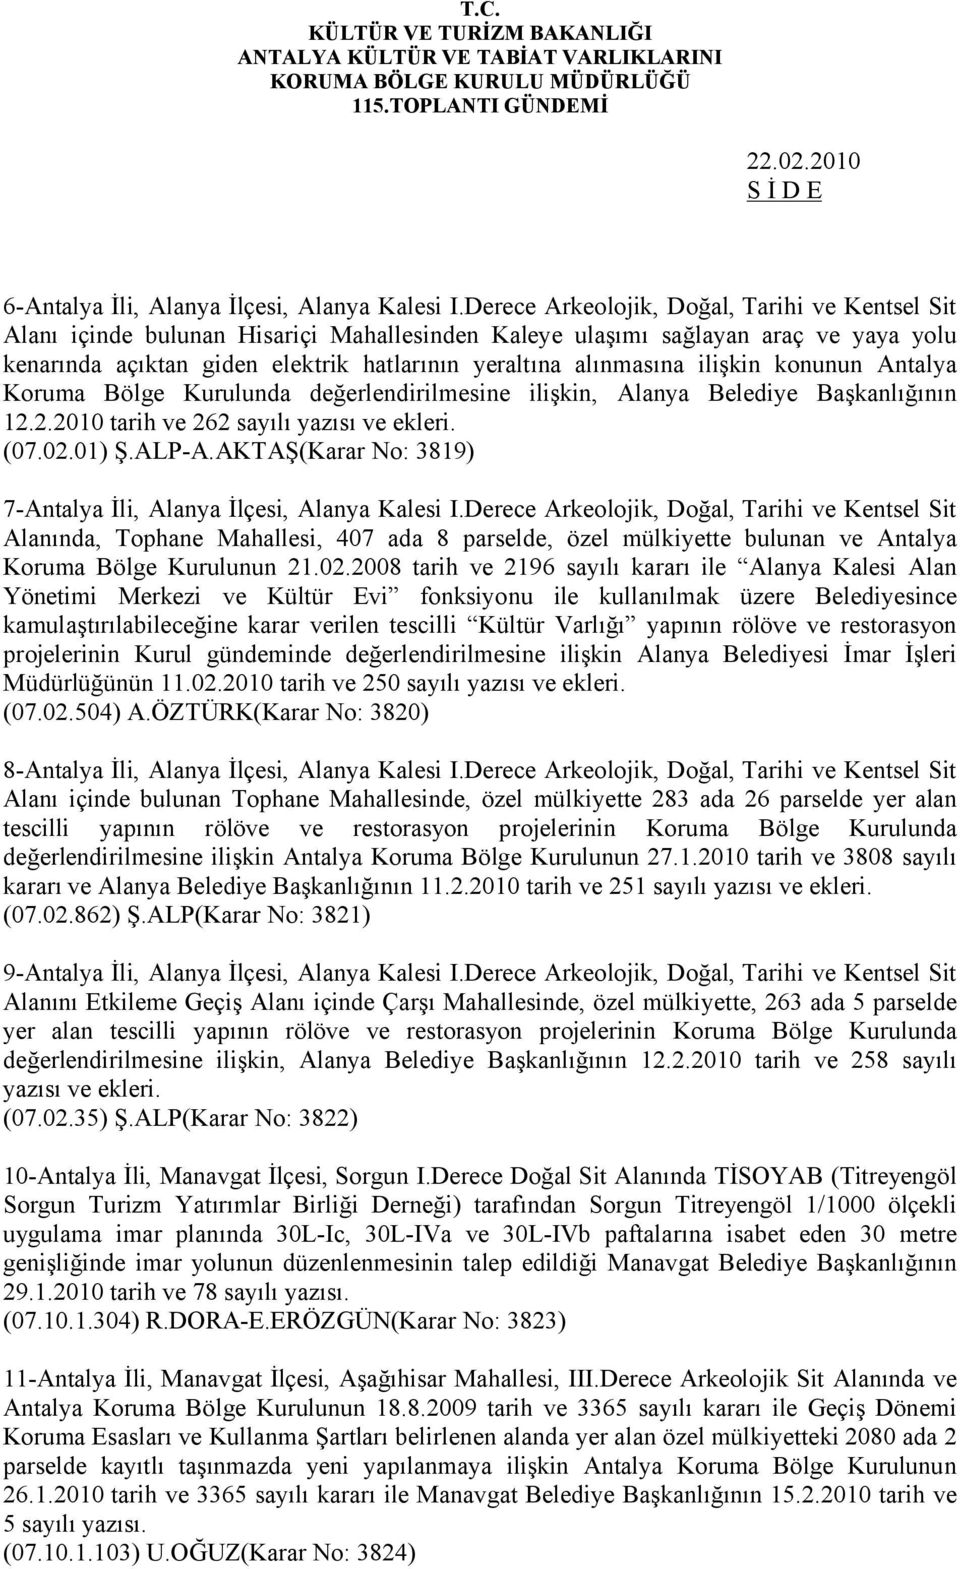 ilişkin konunun Antalya Koruma Bölge Kurulunda değerlendirilmesine ilişkin, Alanya Belediye Başkanlığının 12.2.2010 tarih ve 262 sayılı yazısı ve ekleri. (07.02.01) Ş.ALP-A.